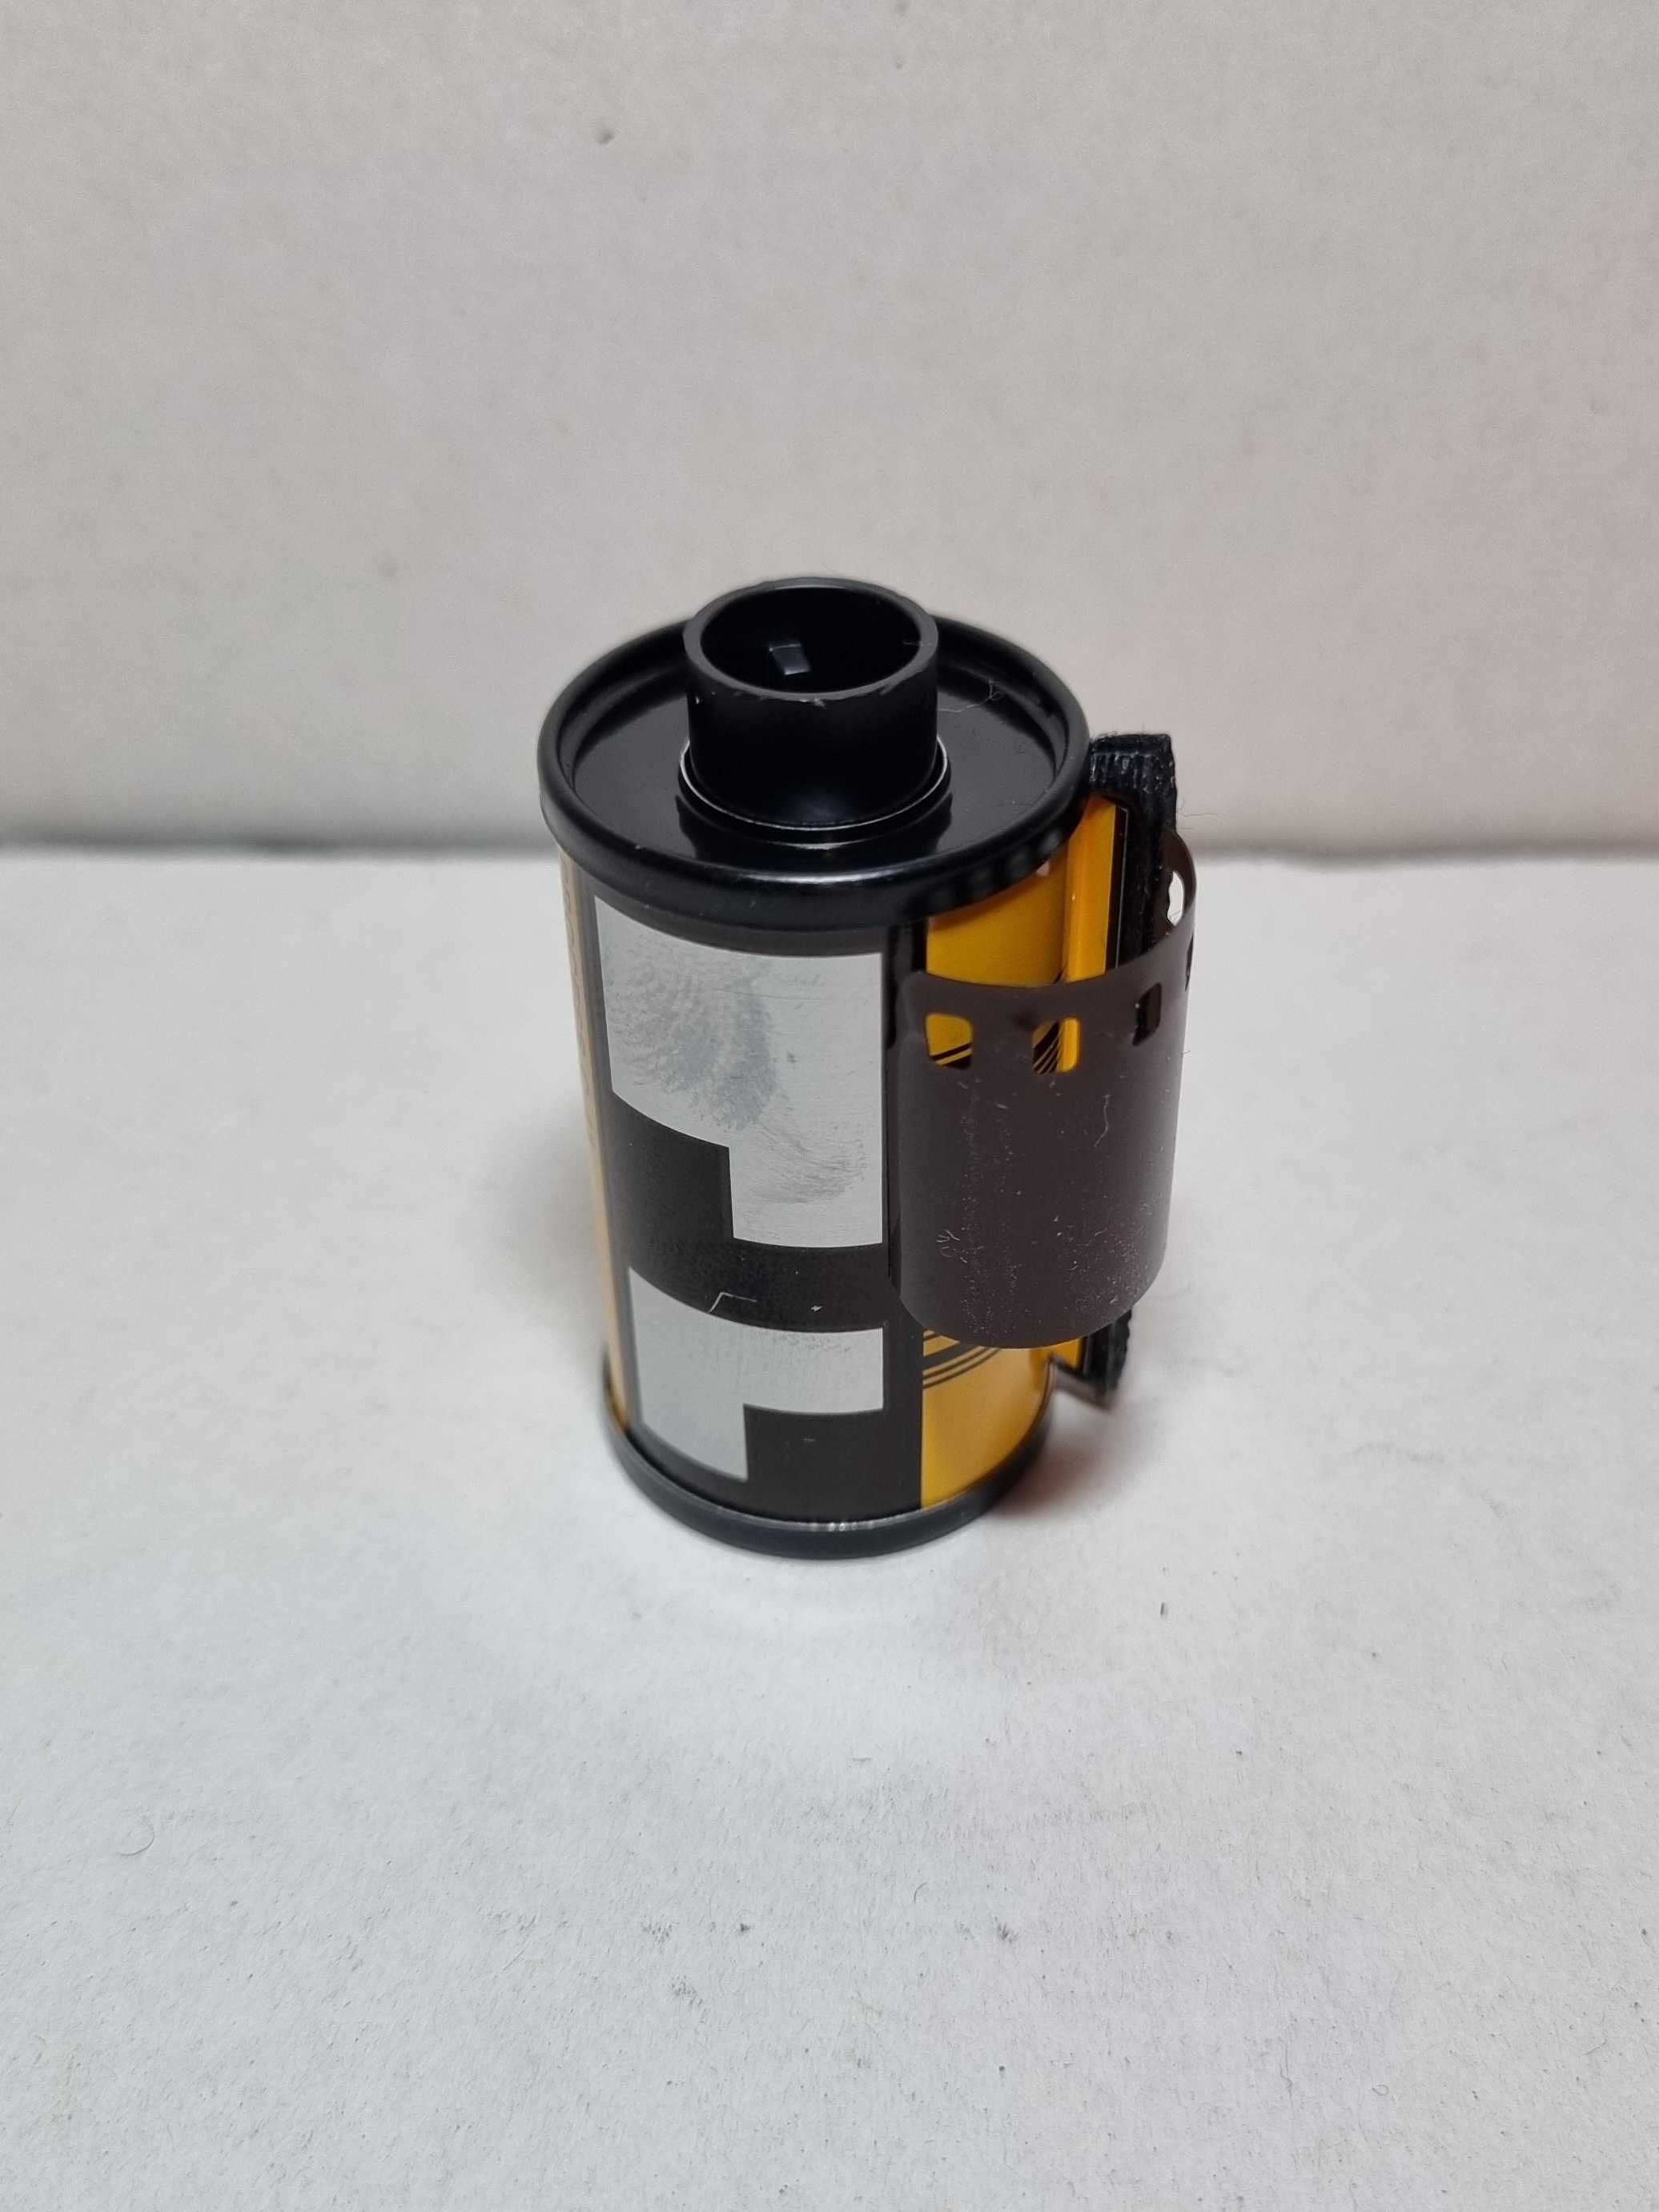 Кассета с фотопленкой Kodak 200 (35-мм)